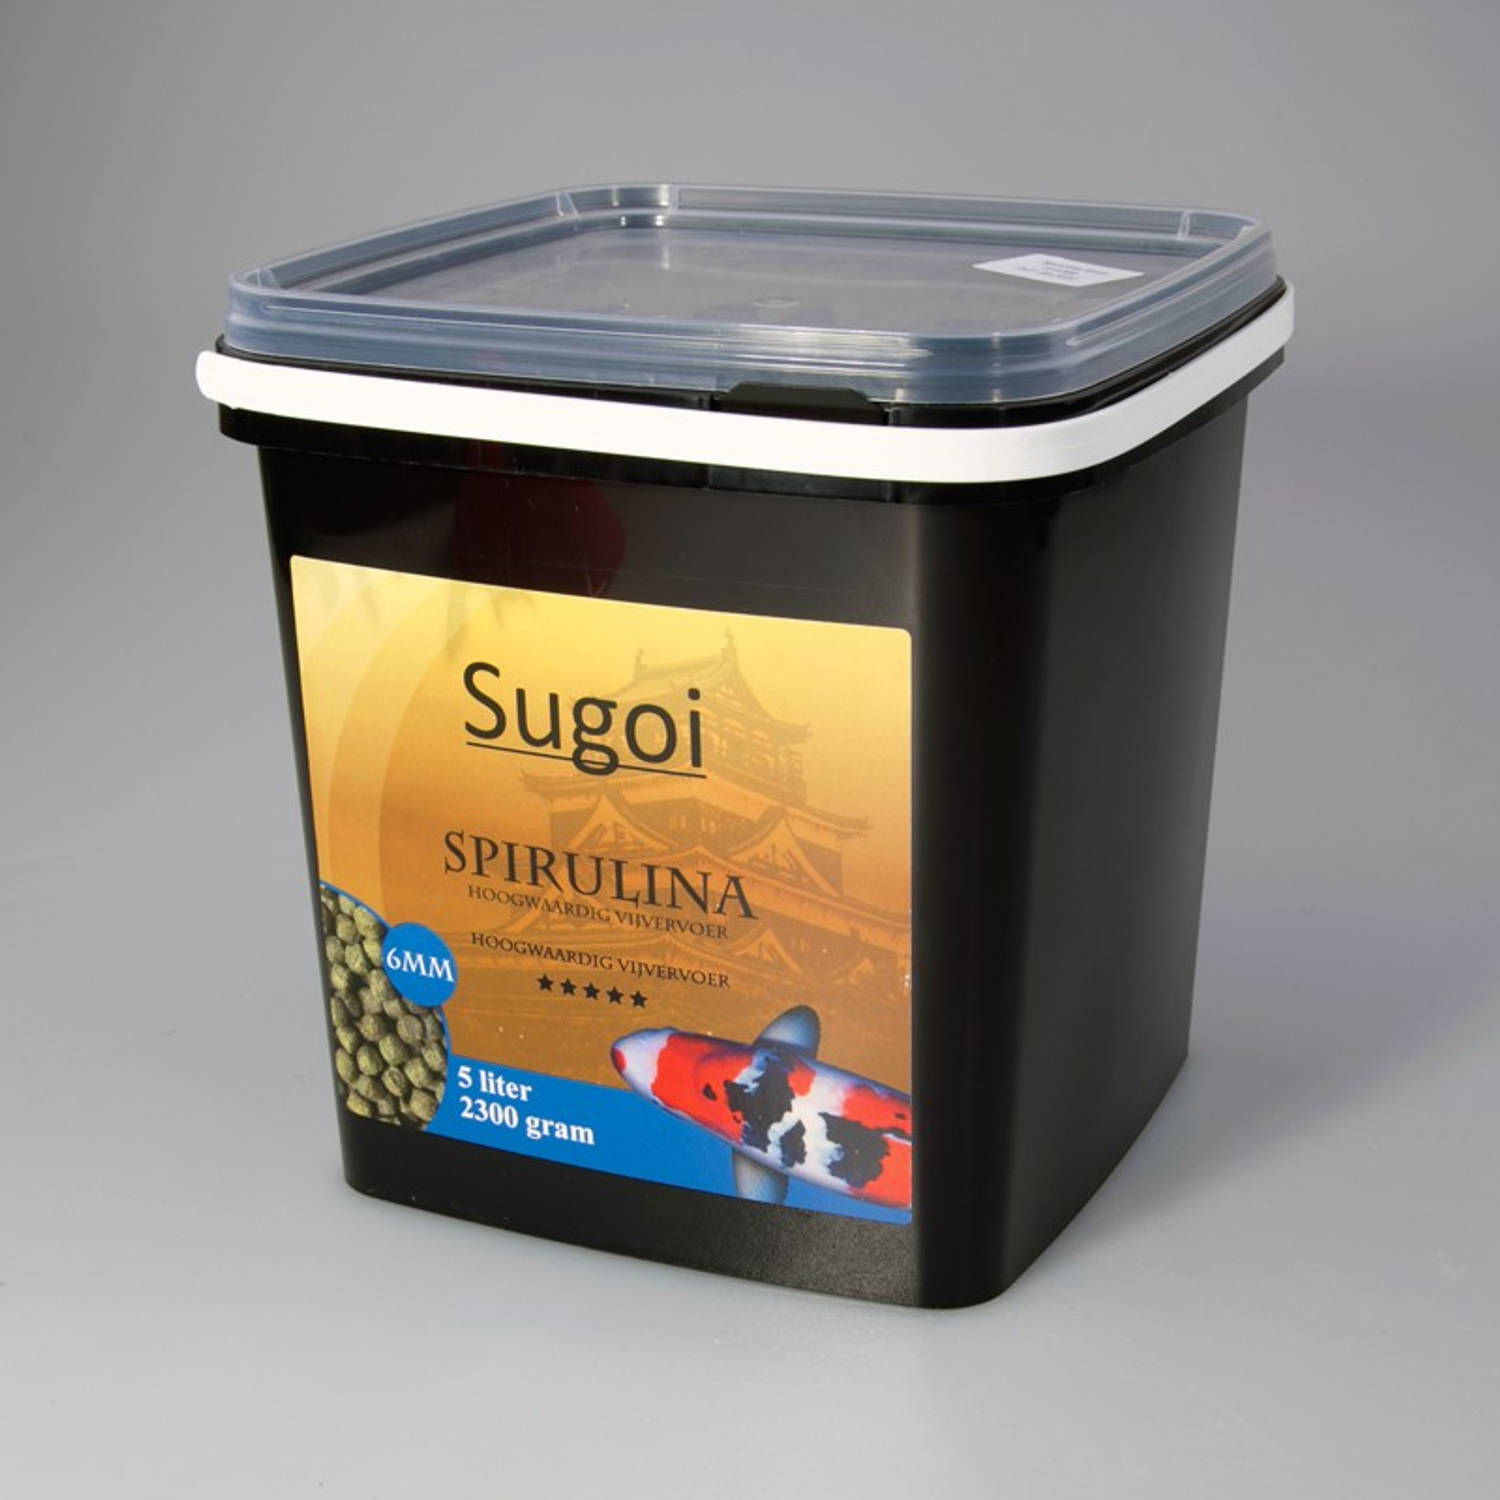 Suren Collection - Sugoi spirulina 6 mm 5 liter